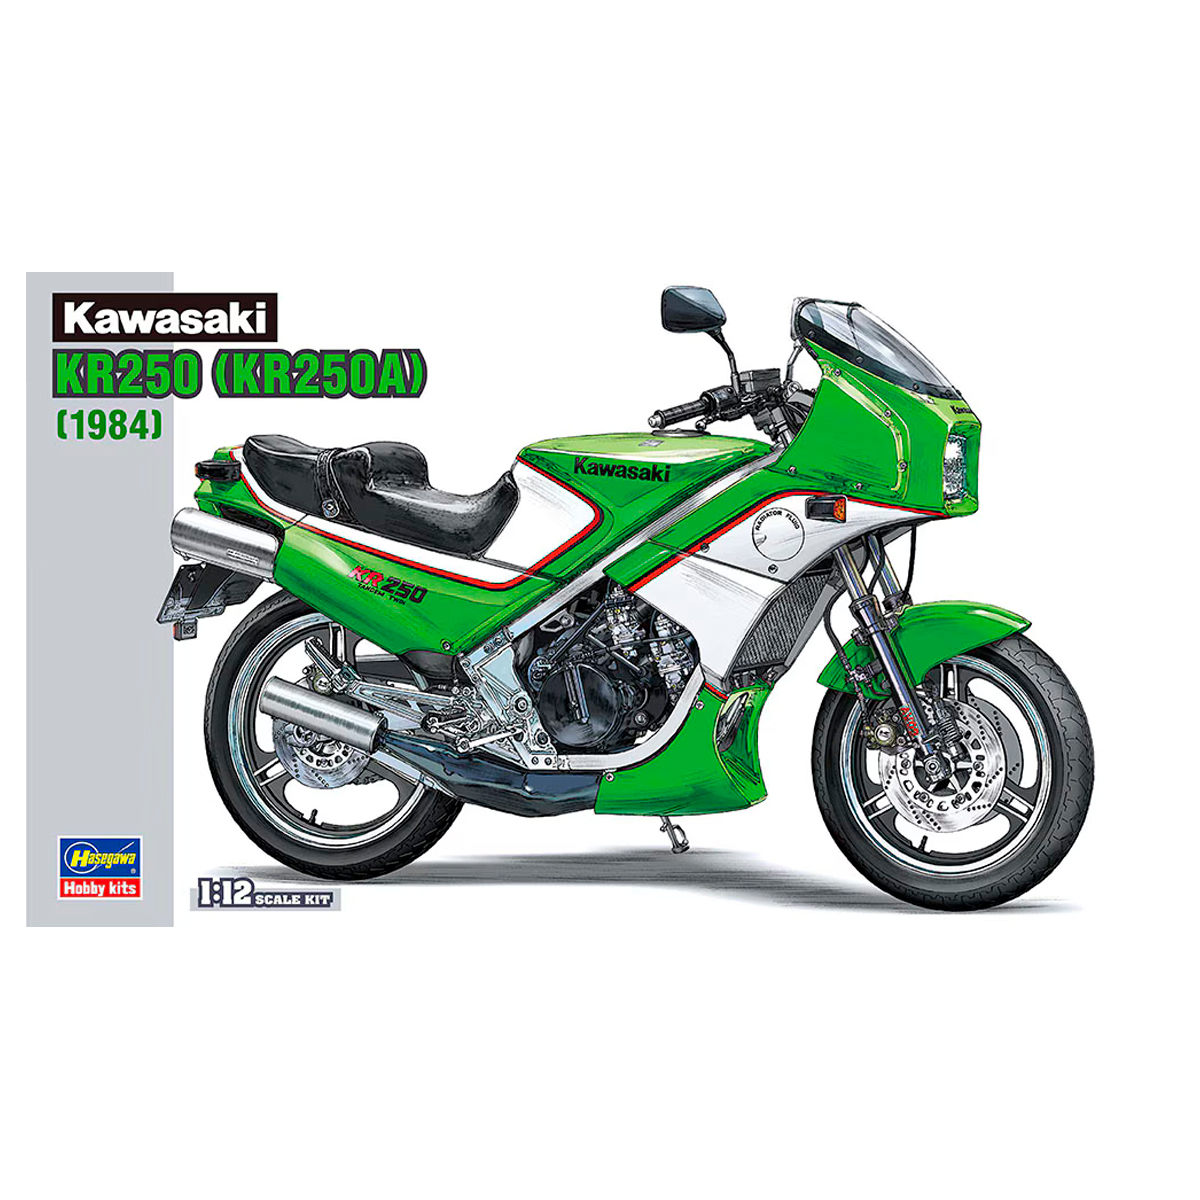 Hasegawa 1/12 BK12 Kawasaki KR250 (KR250A) (1984)